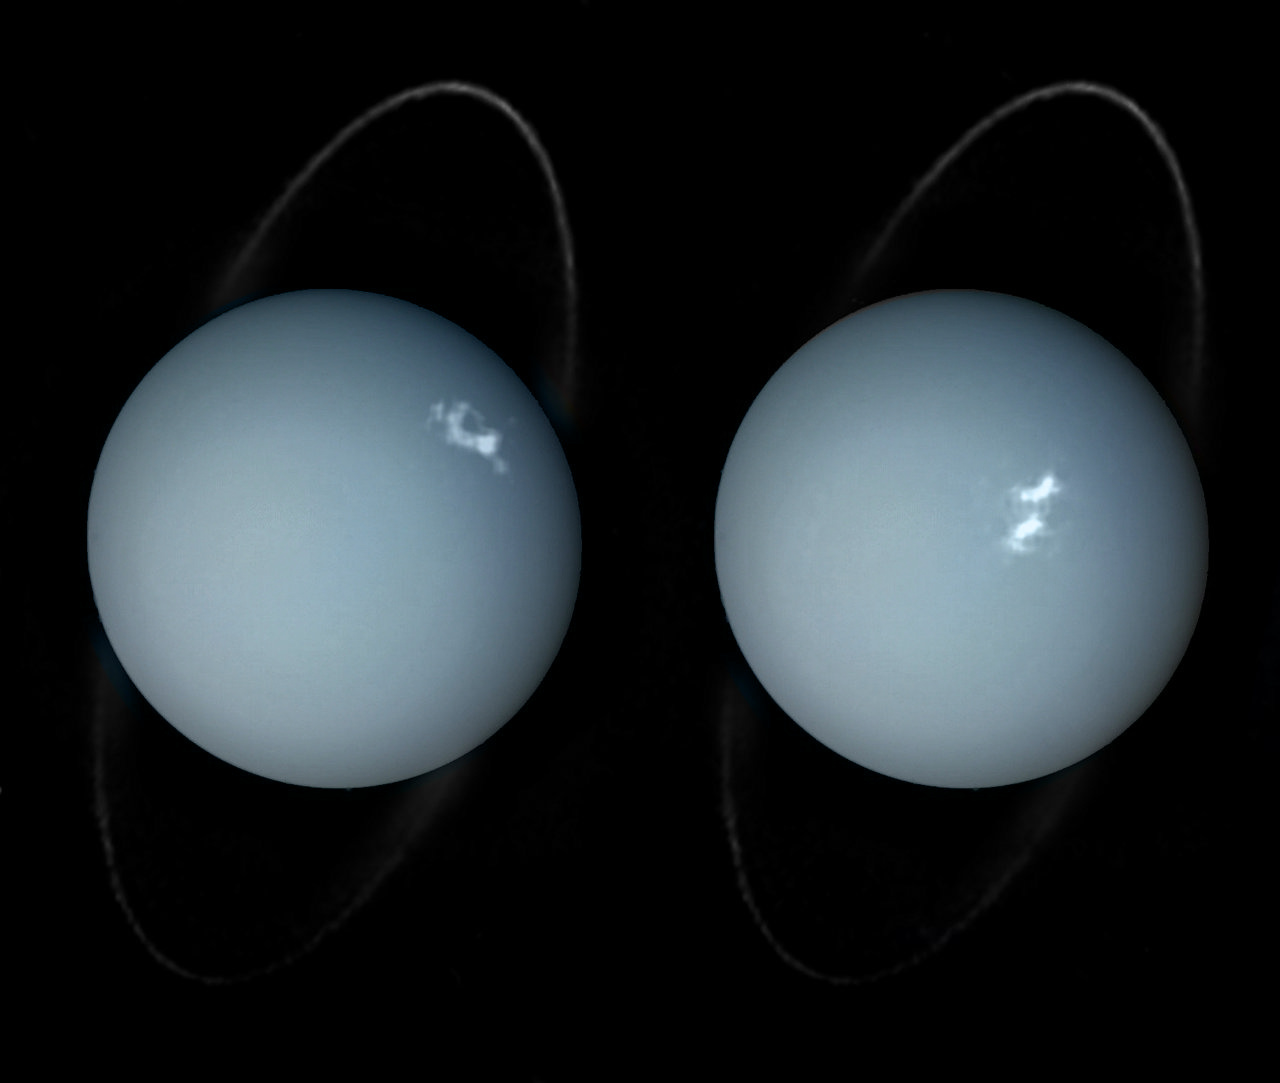 Urano está nebuloso por causa de todo o gás metano extra 